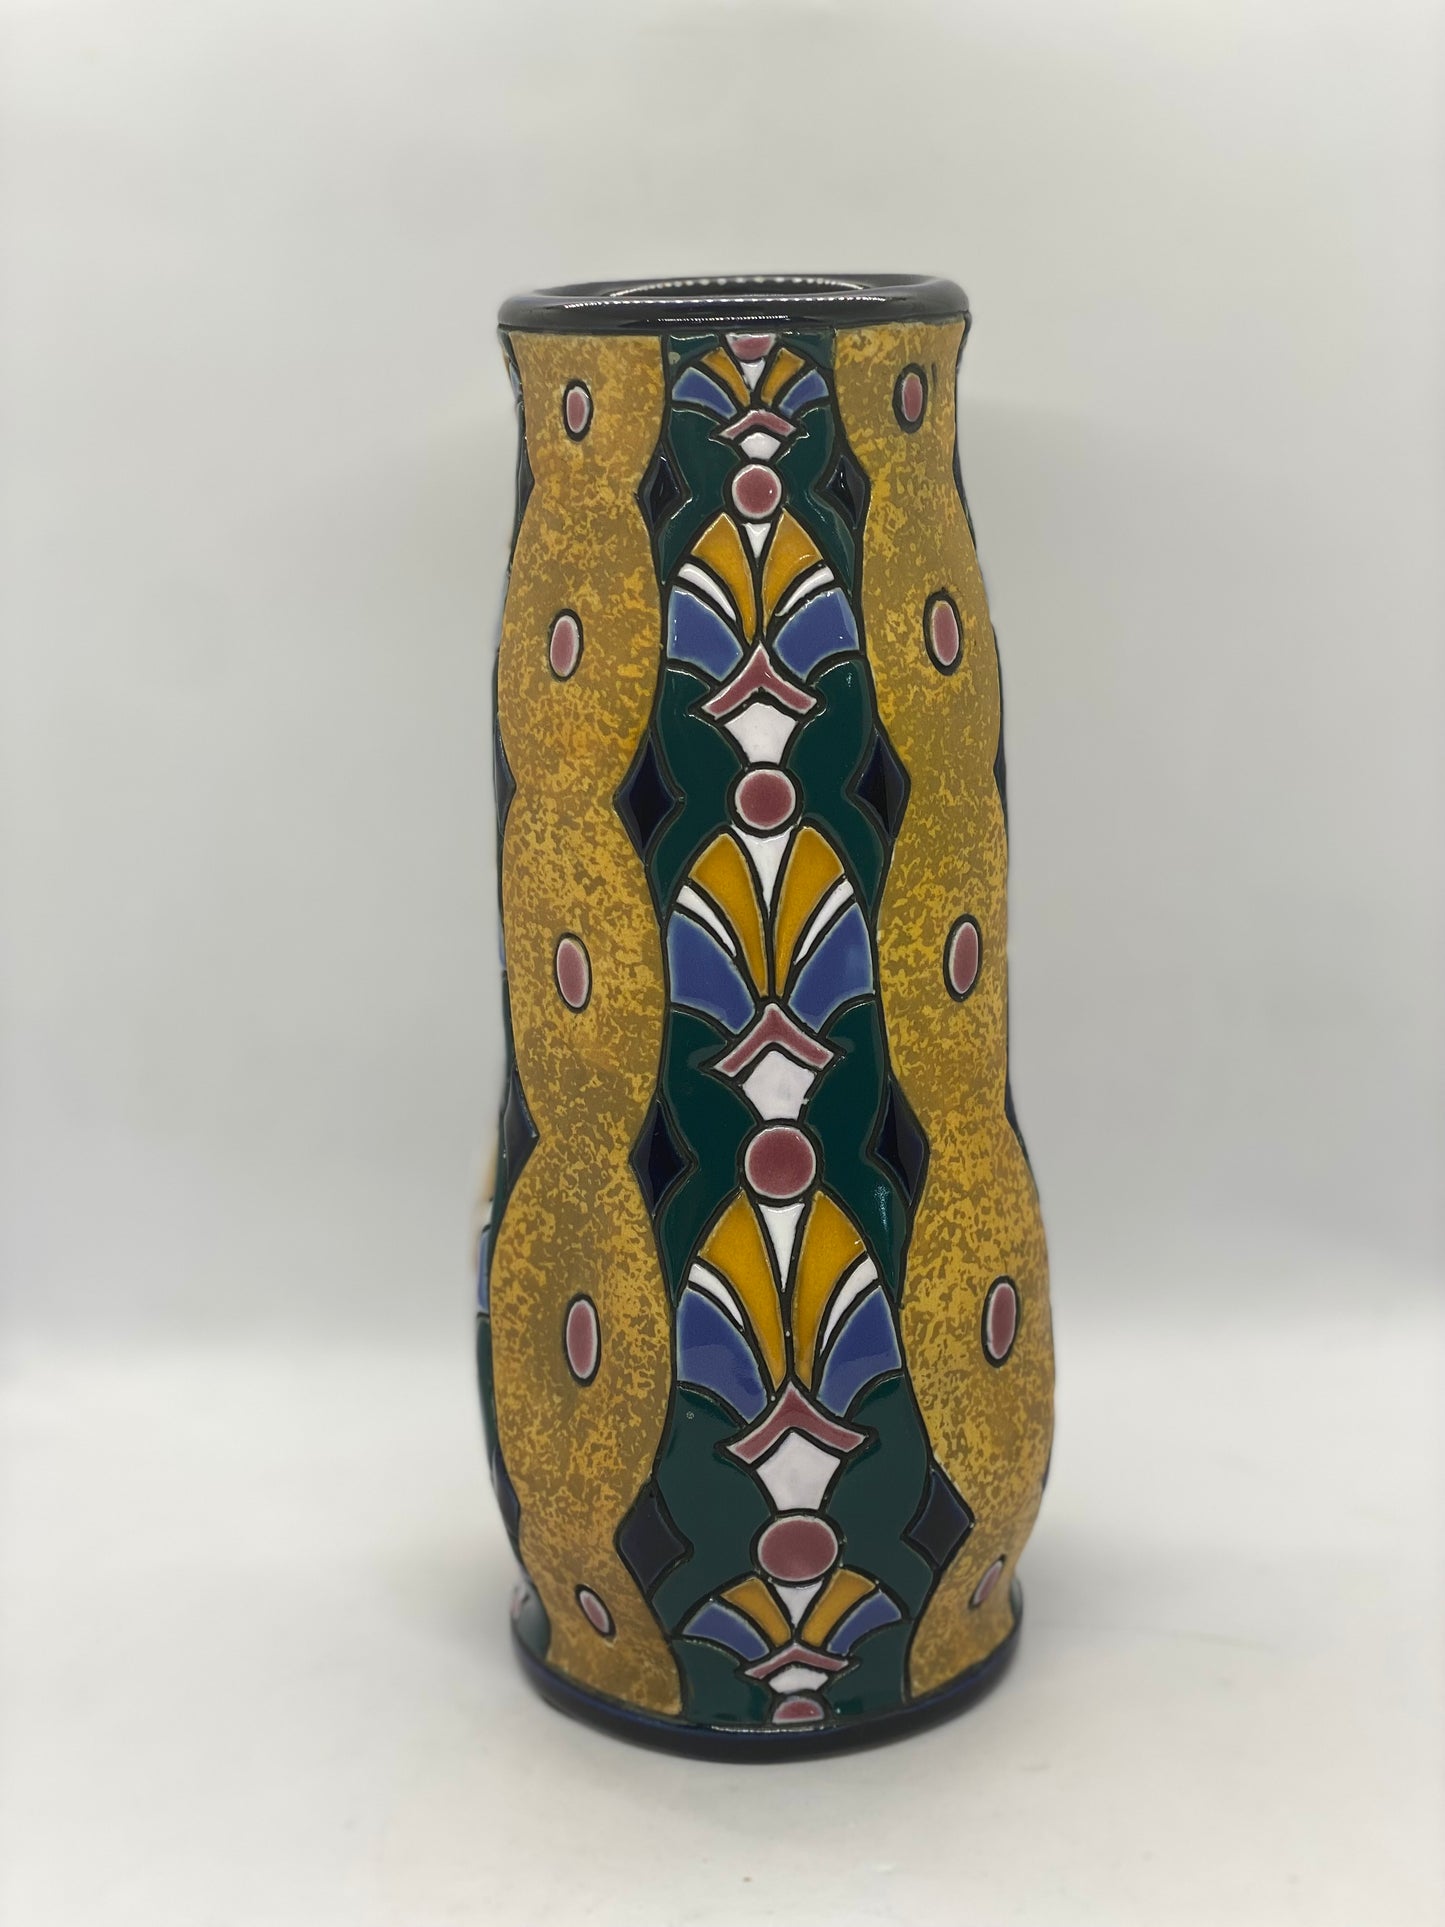 Czech Art Deco Vase c. 1920s to 1930s